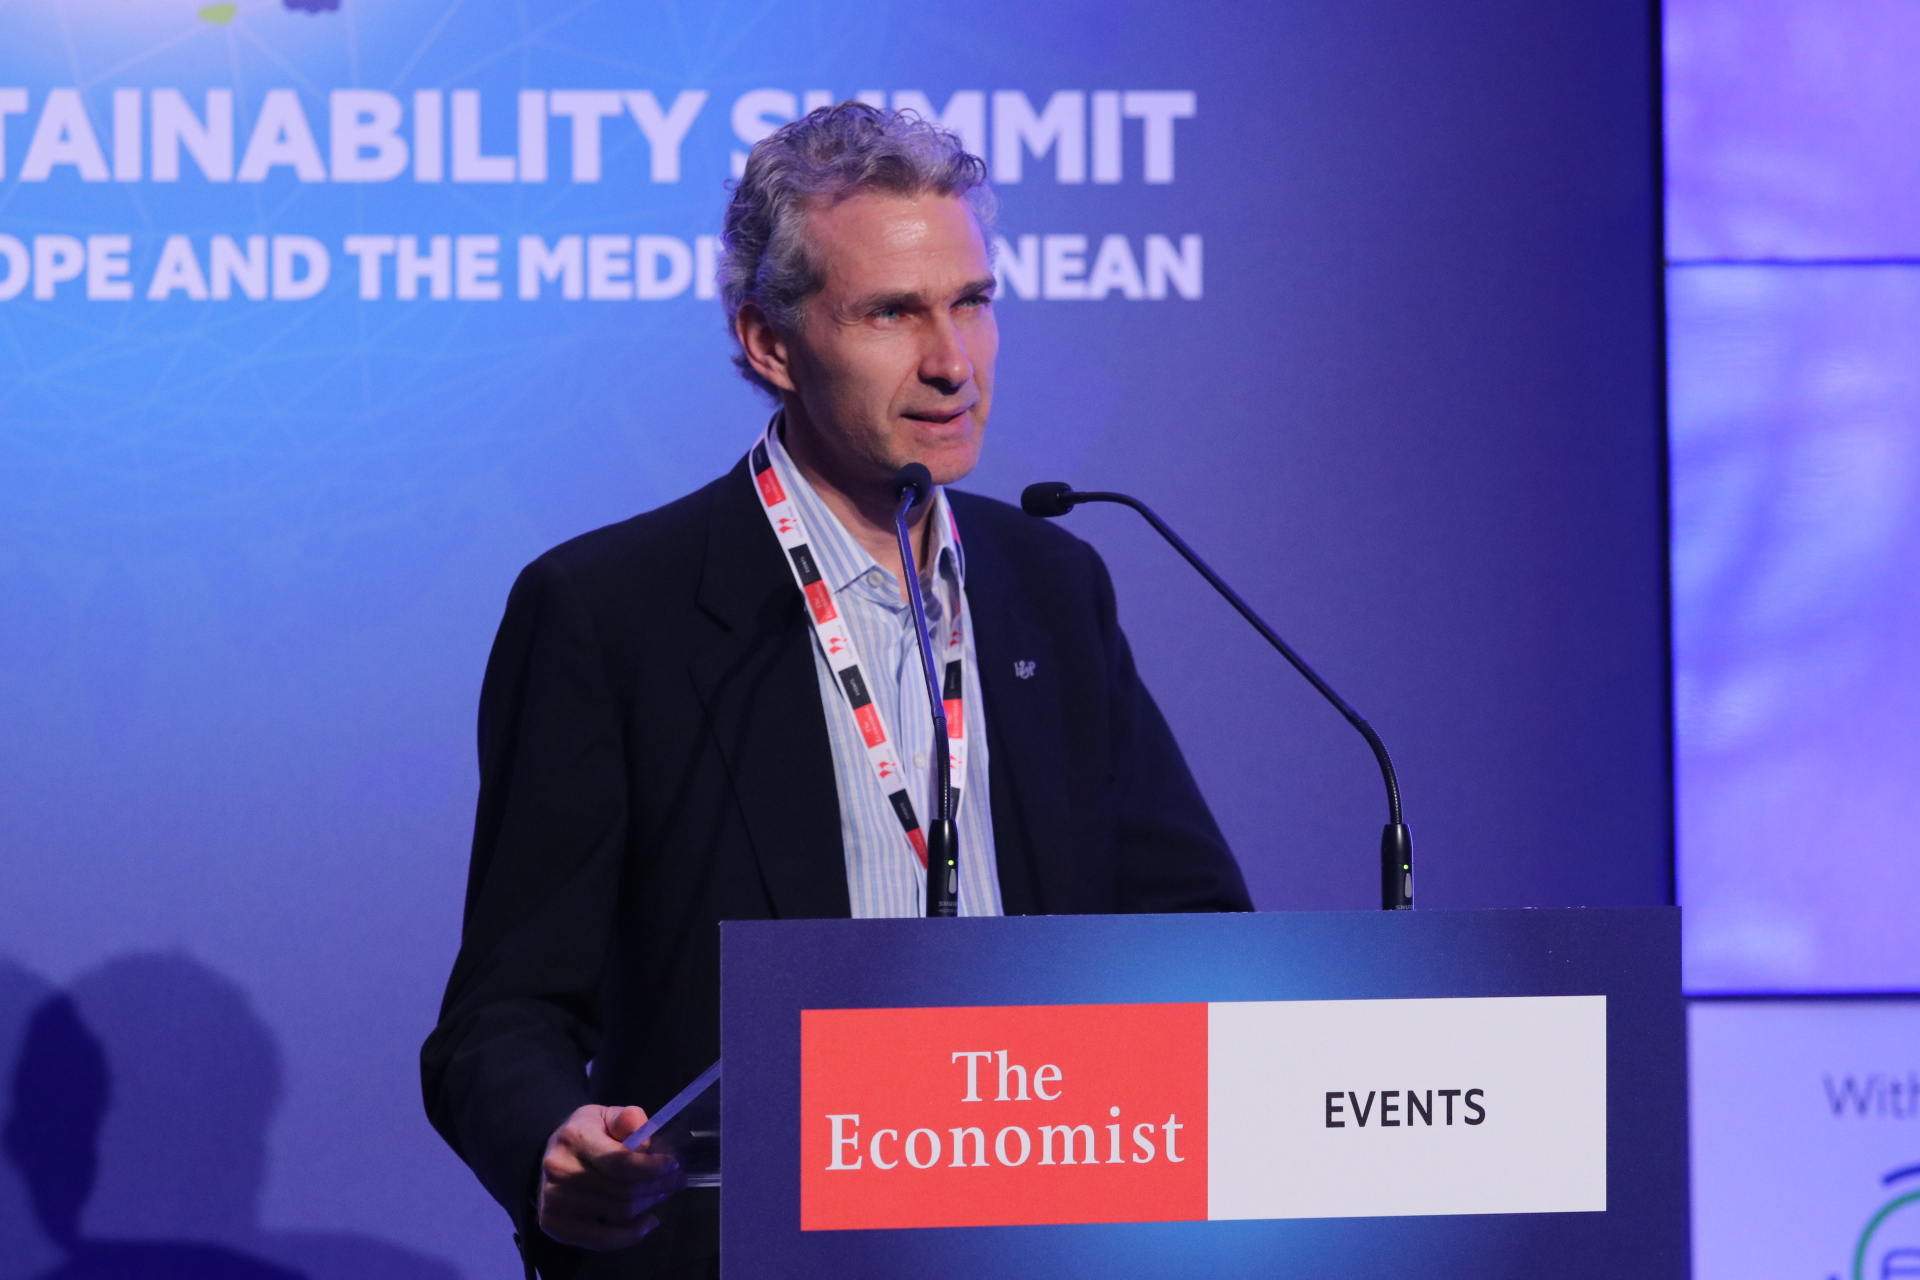 Event - The Economist